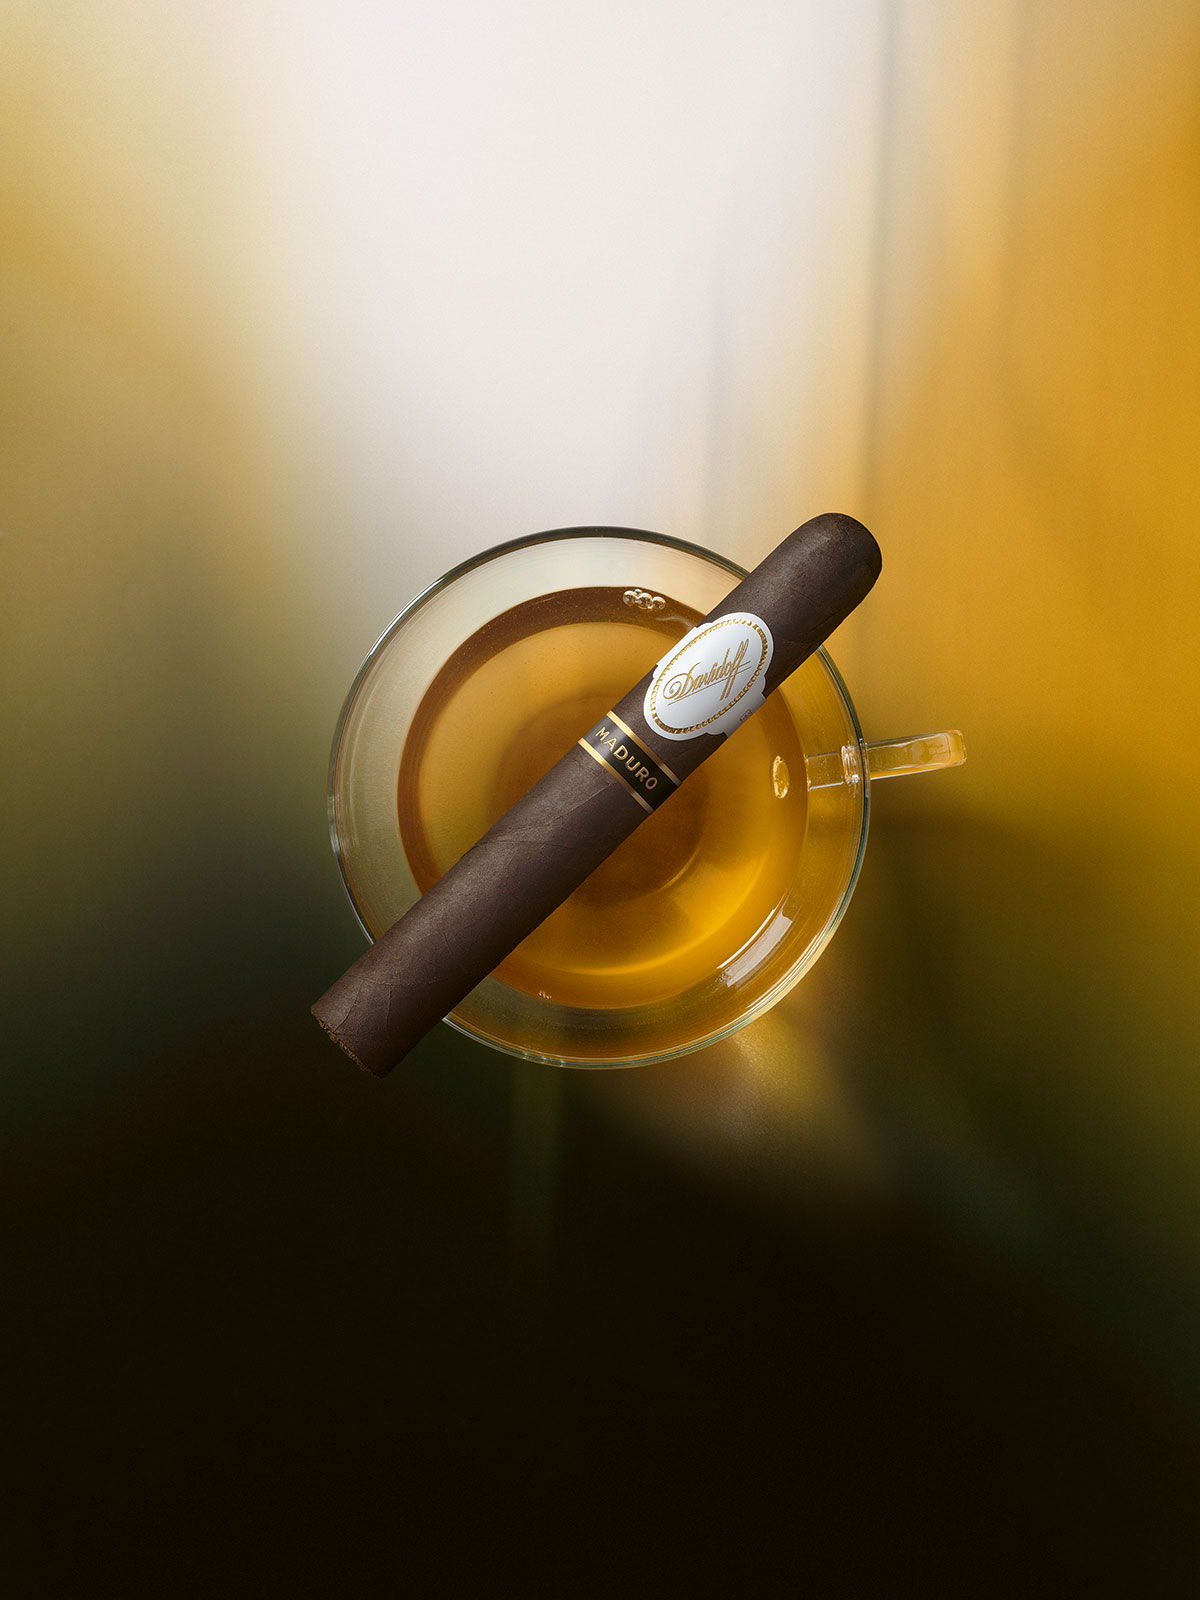 Eine Davidoff Maduro-Zigarre, die auf einem Glas liegt, das mit Lapsang-Souchong-Tee gefüllt ist.